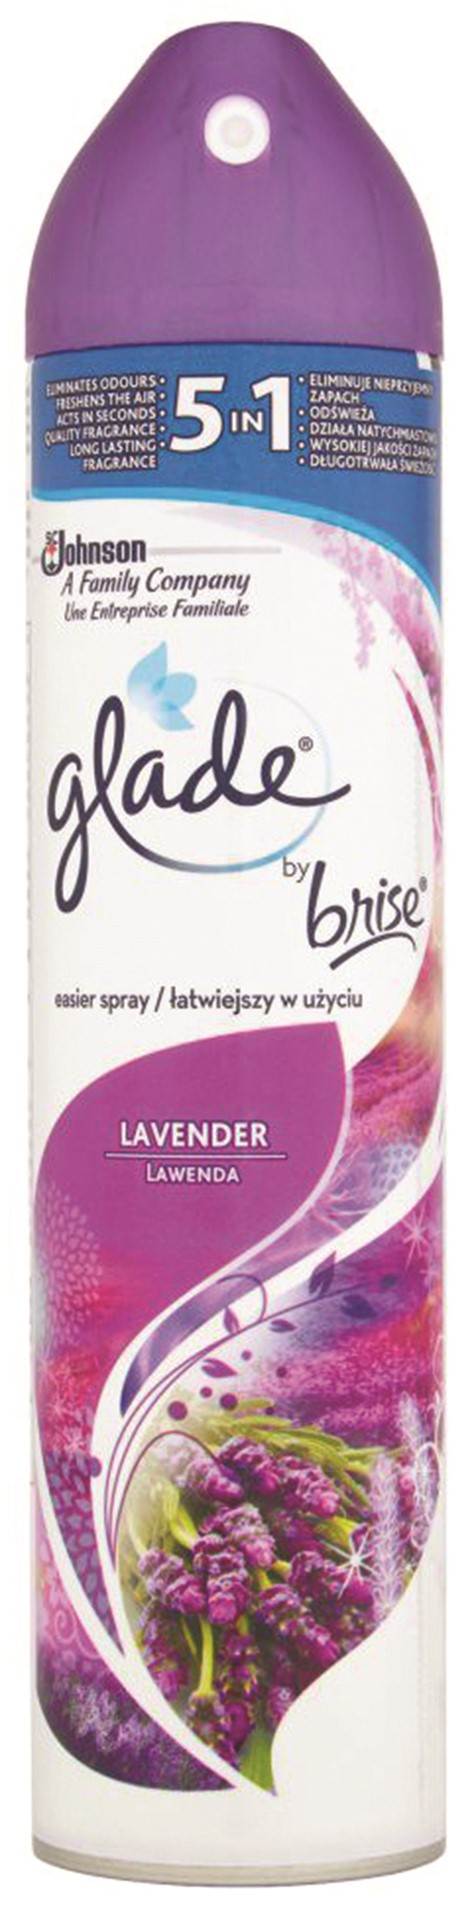 Odświeżacz powietrza GLADE/BRISE Lawenda, spray, 300ml